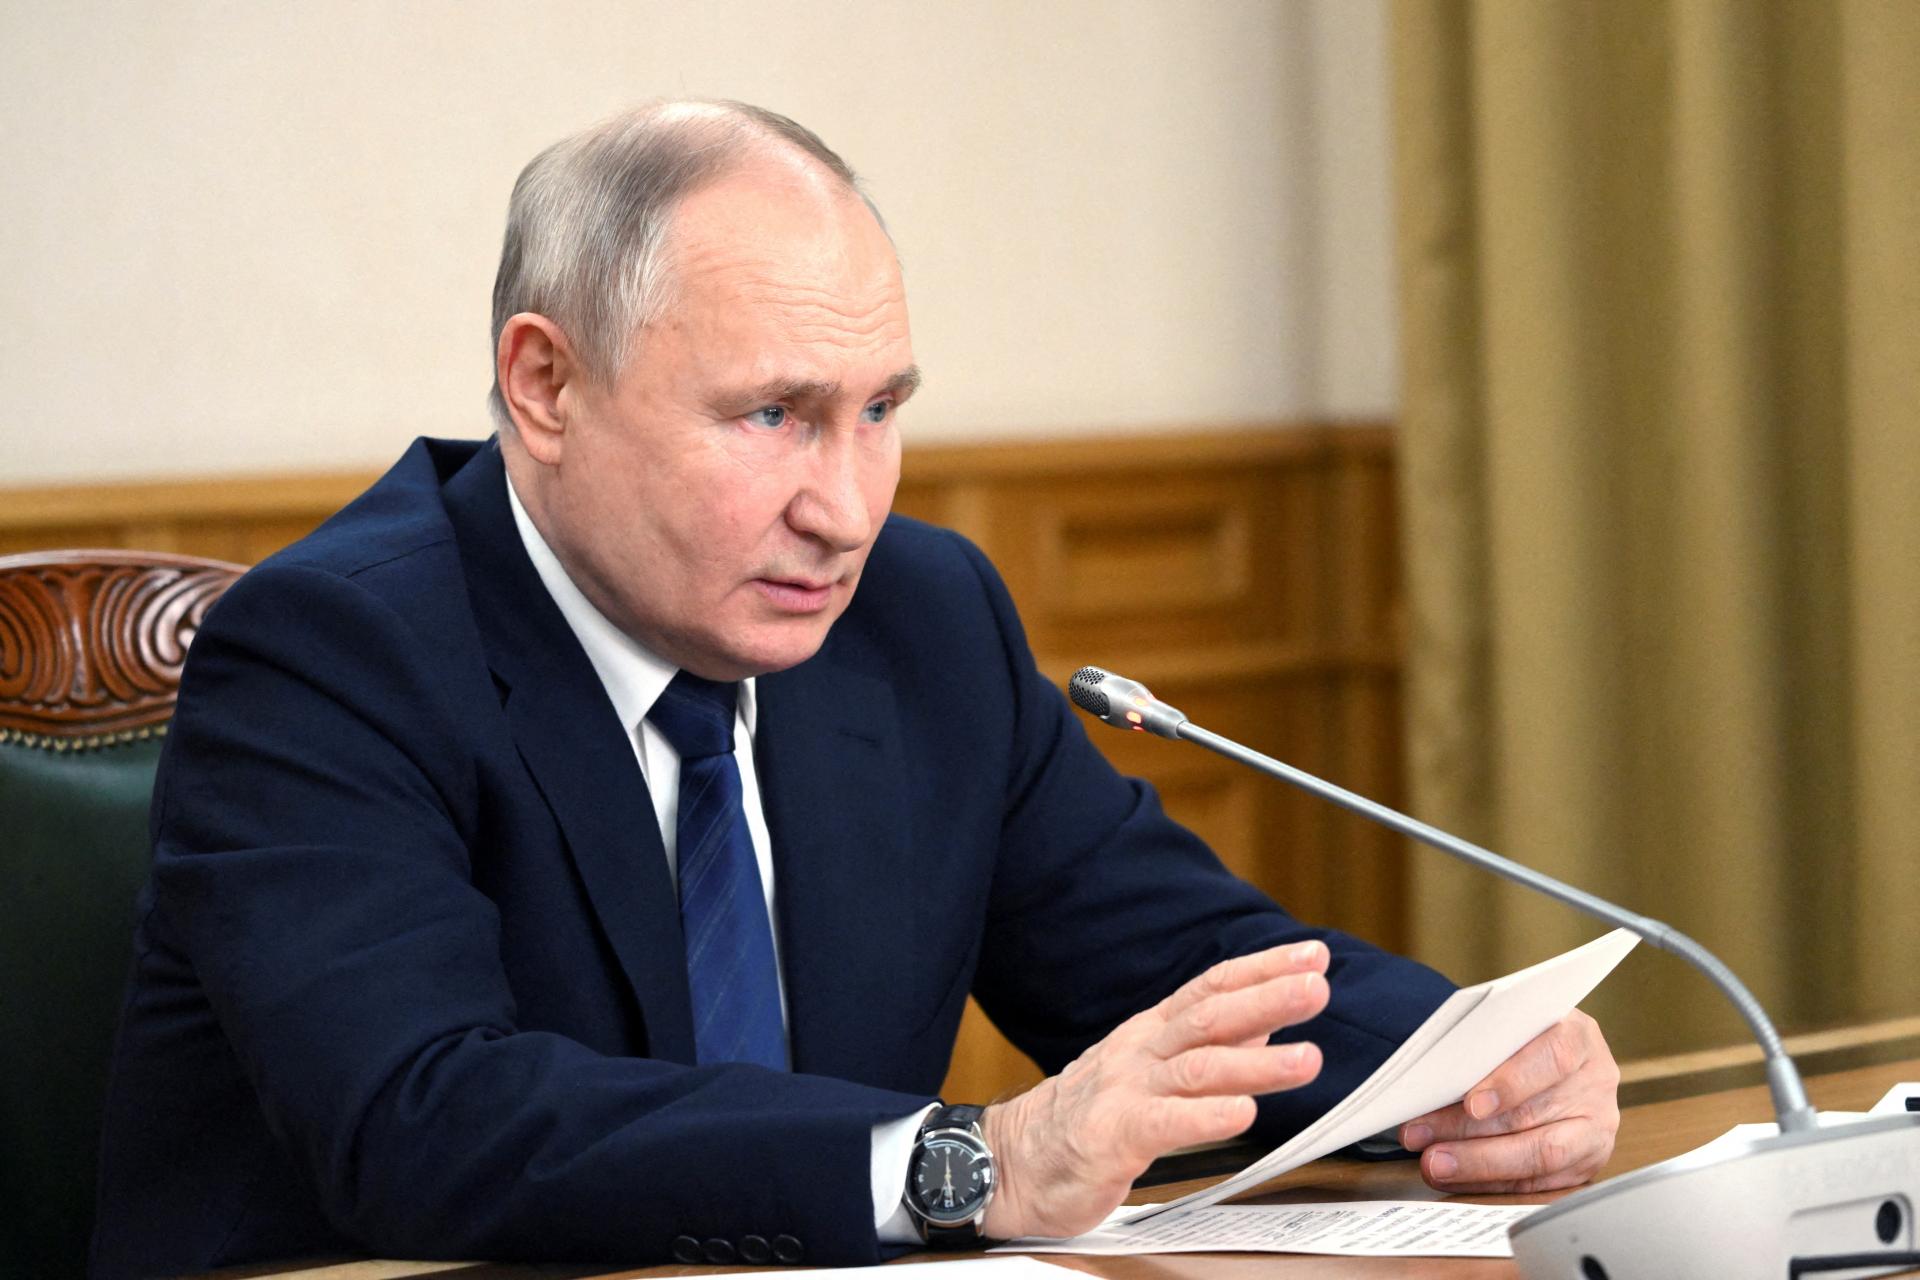 Putin dal Spojeným štátom nepriamo najavo, že je ochotný rokovať o Ukrajine, píše Bloomberg